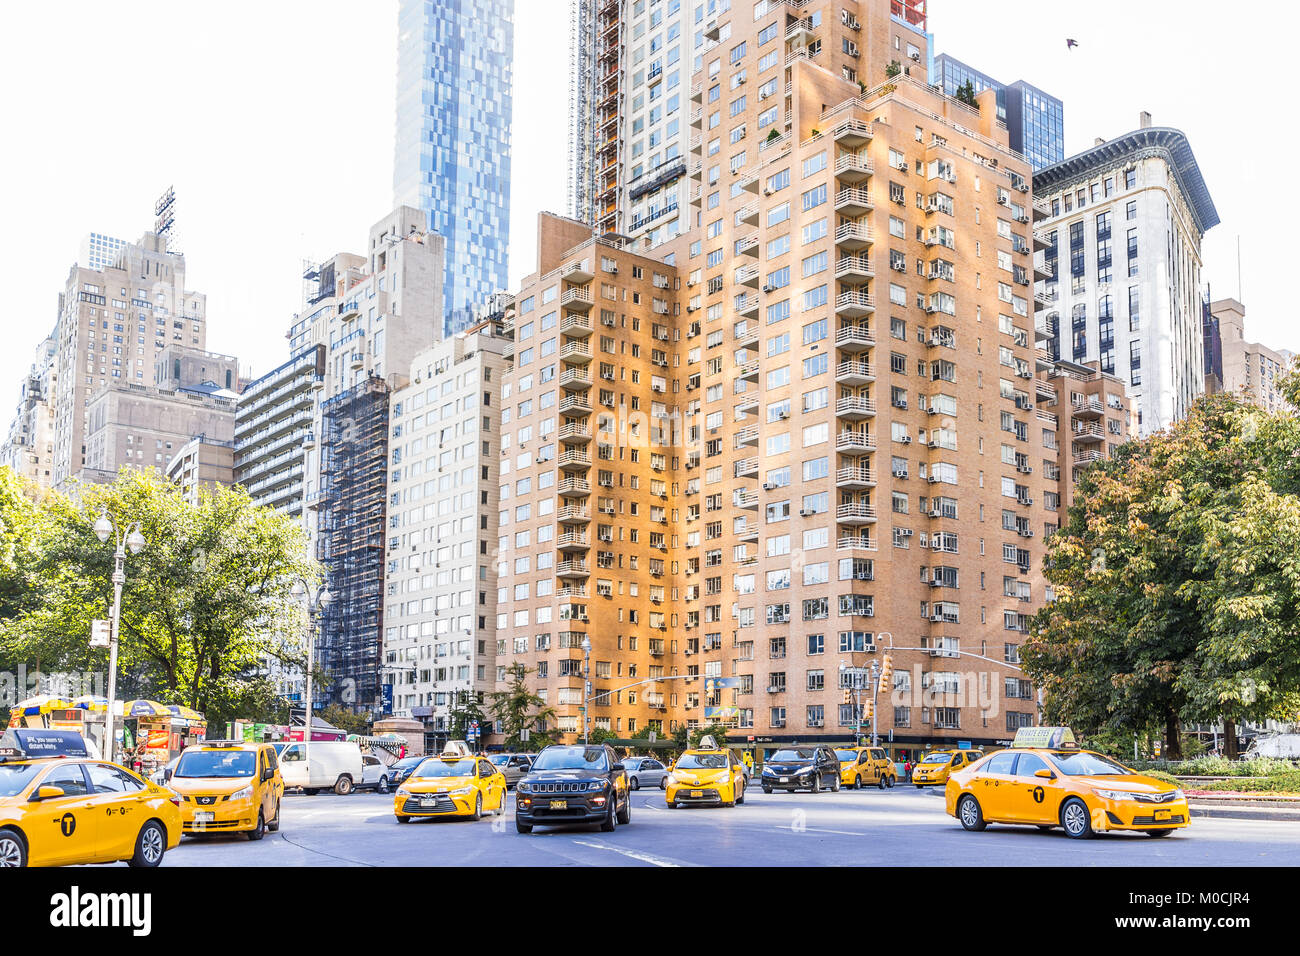 La Ciudad de Nueva York, Estados Unidos - 28 de octubre de 2017: Columbus Circle en Manhattan, Nueva York, rascacielos, muchos taxi el tráfico, los edificios de la calle Broadway en sunn Foto de stock